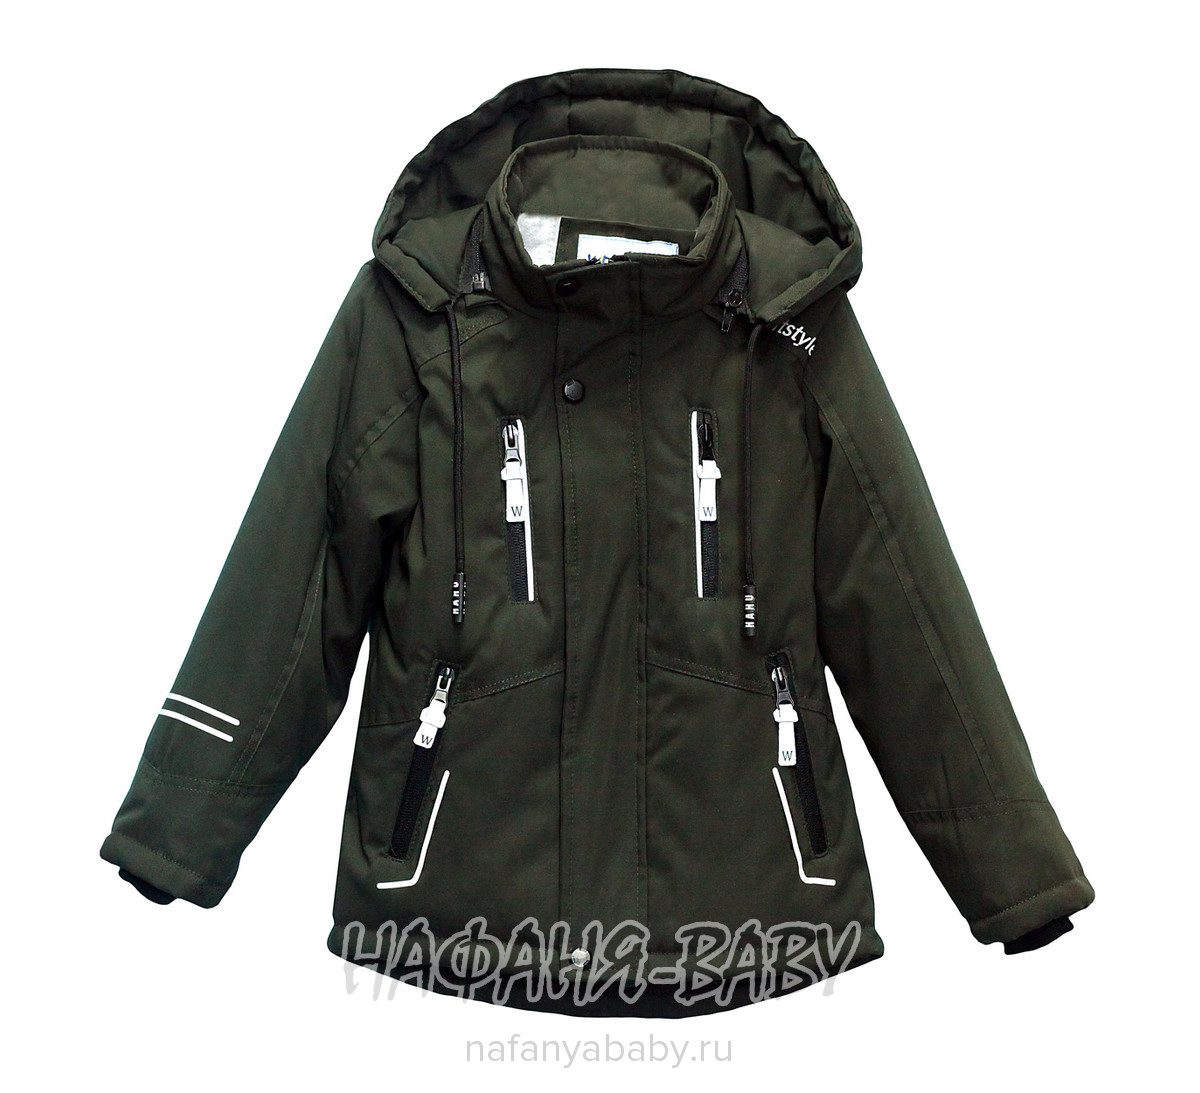 Детская демисезонная куртка WEISHIDO арт: 2221, 5-9 лет, 1-4 года, оптом Китай (Пекин)